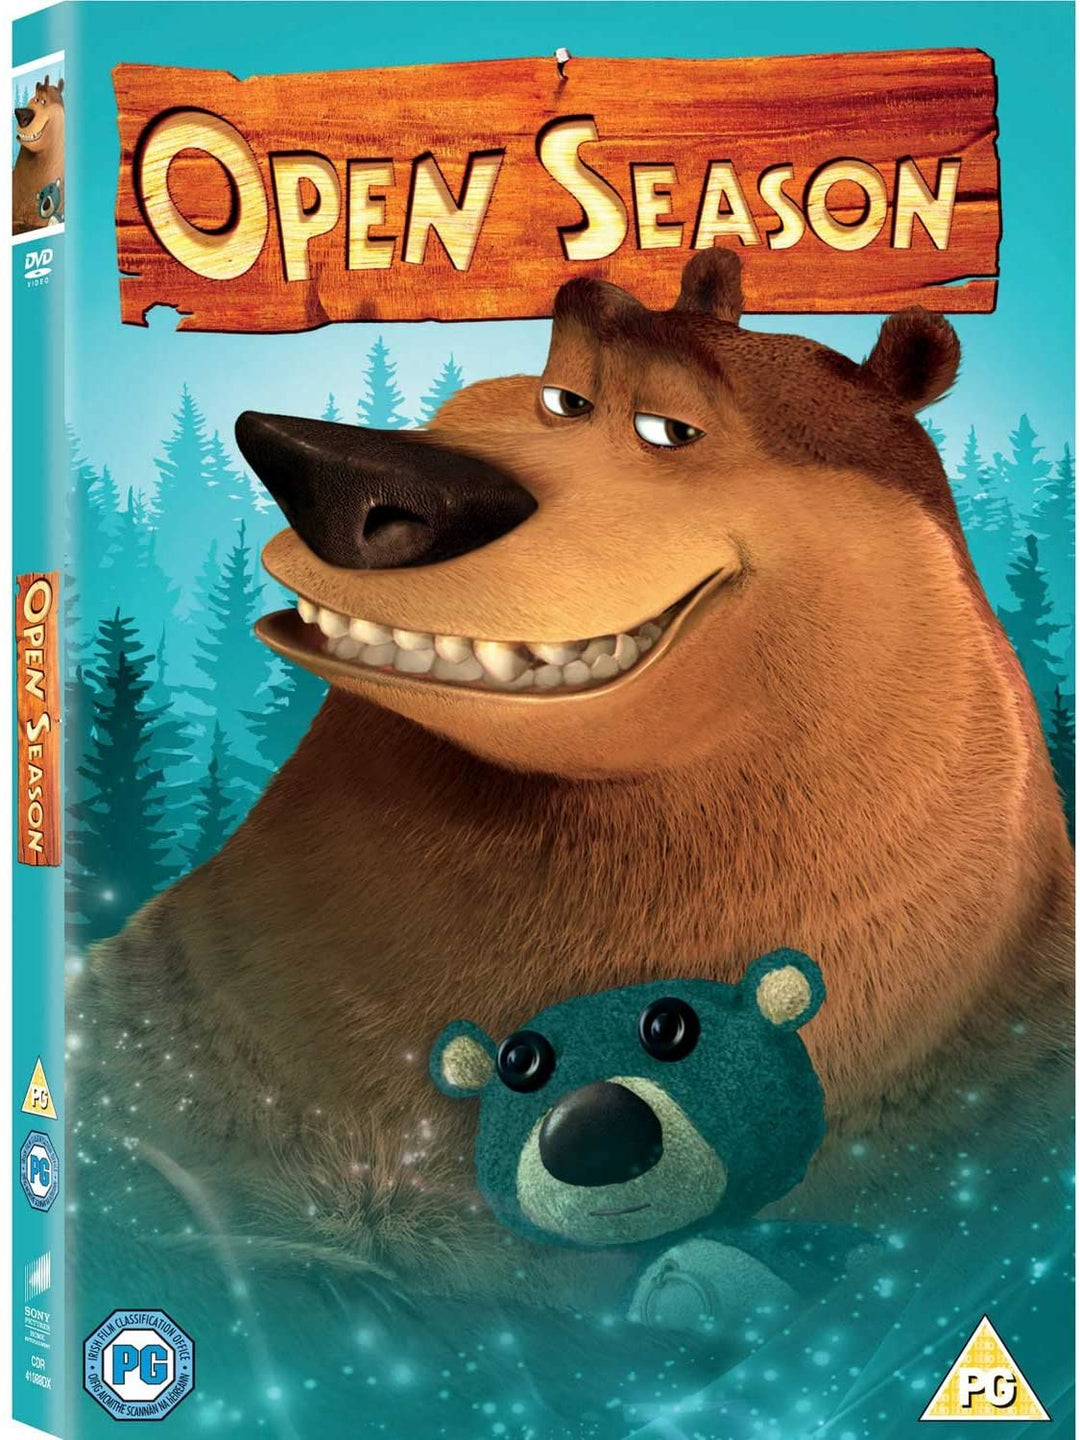 Open Season [2006] - Comedy/Adventure [DVD]